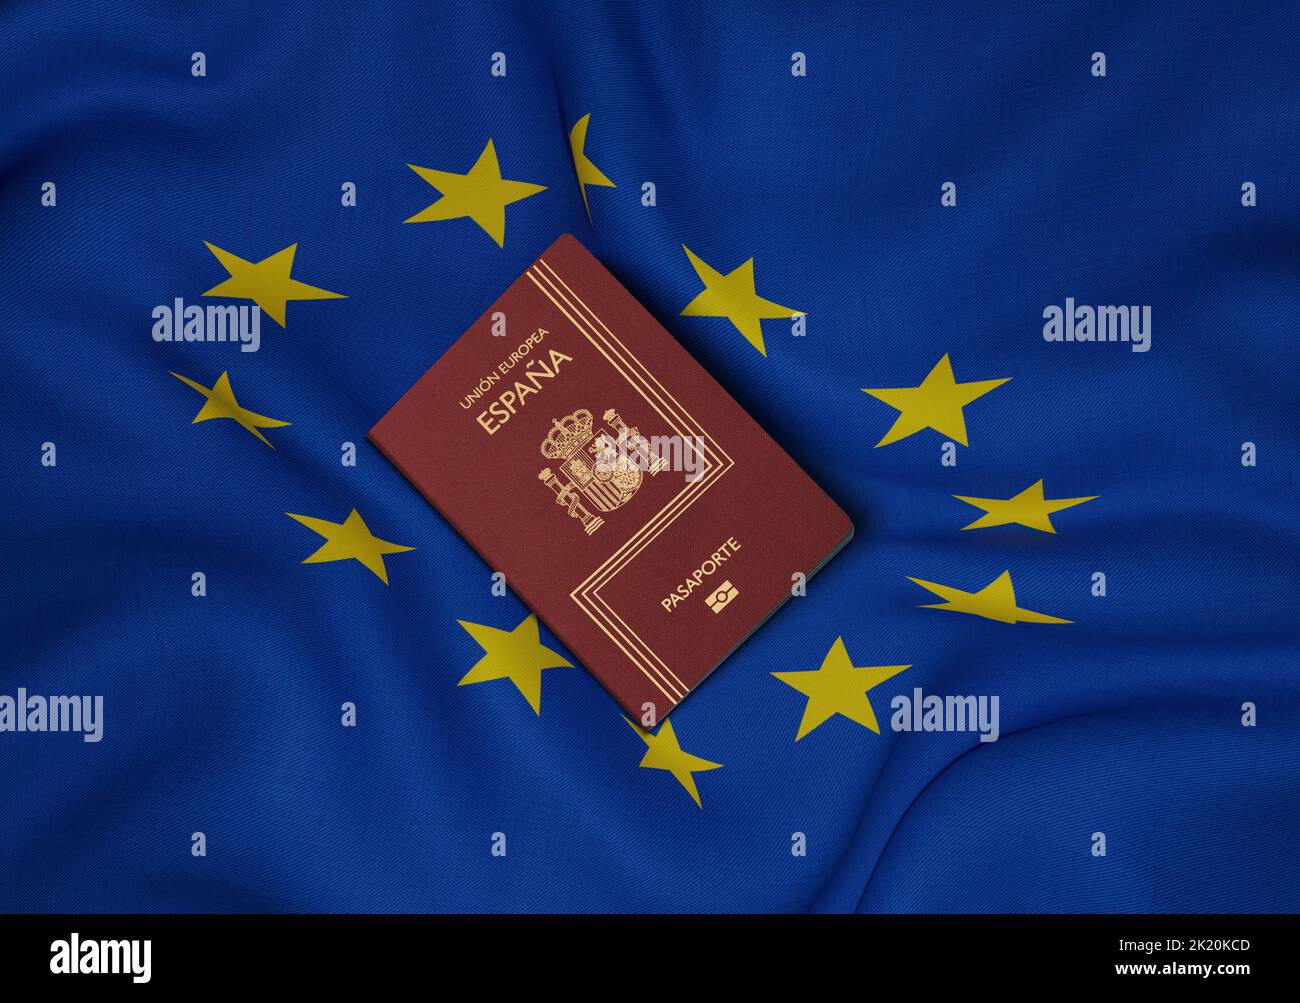 Spanischer Reisepass mit der Flagge der Europäischen Union in der Mitte des Fotos, Draufsicht Stockfoto